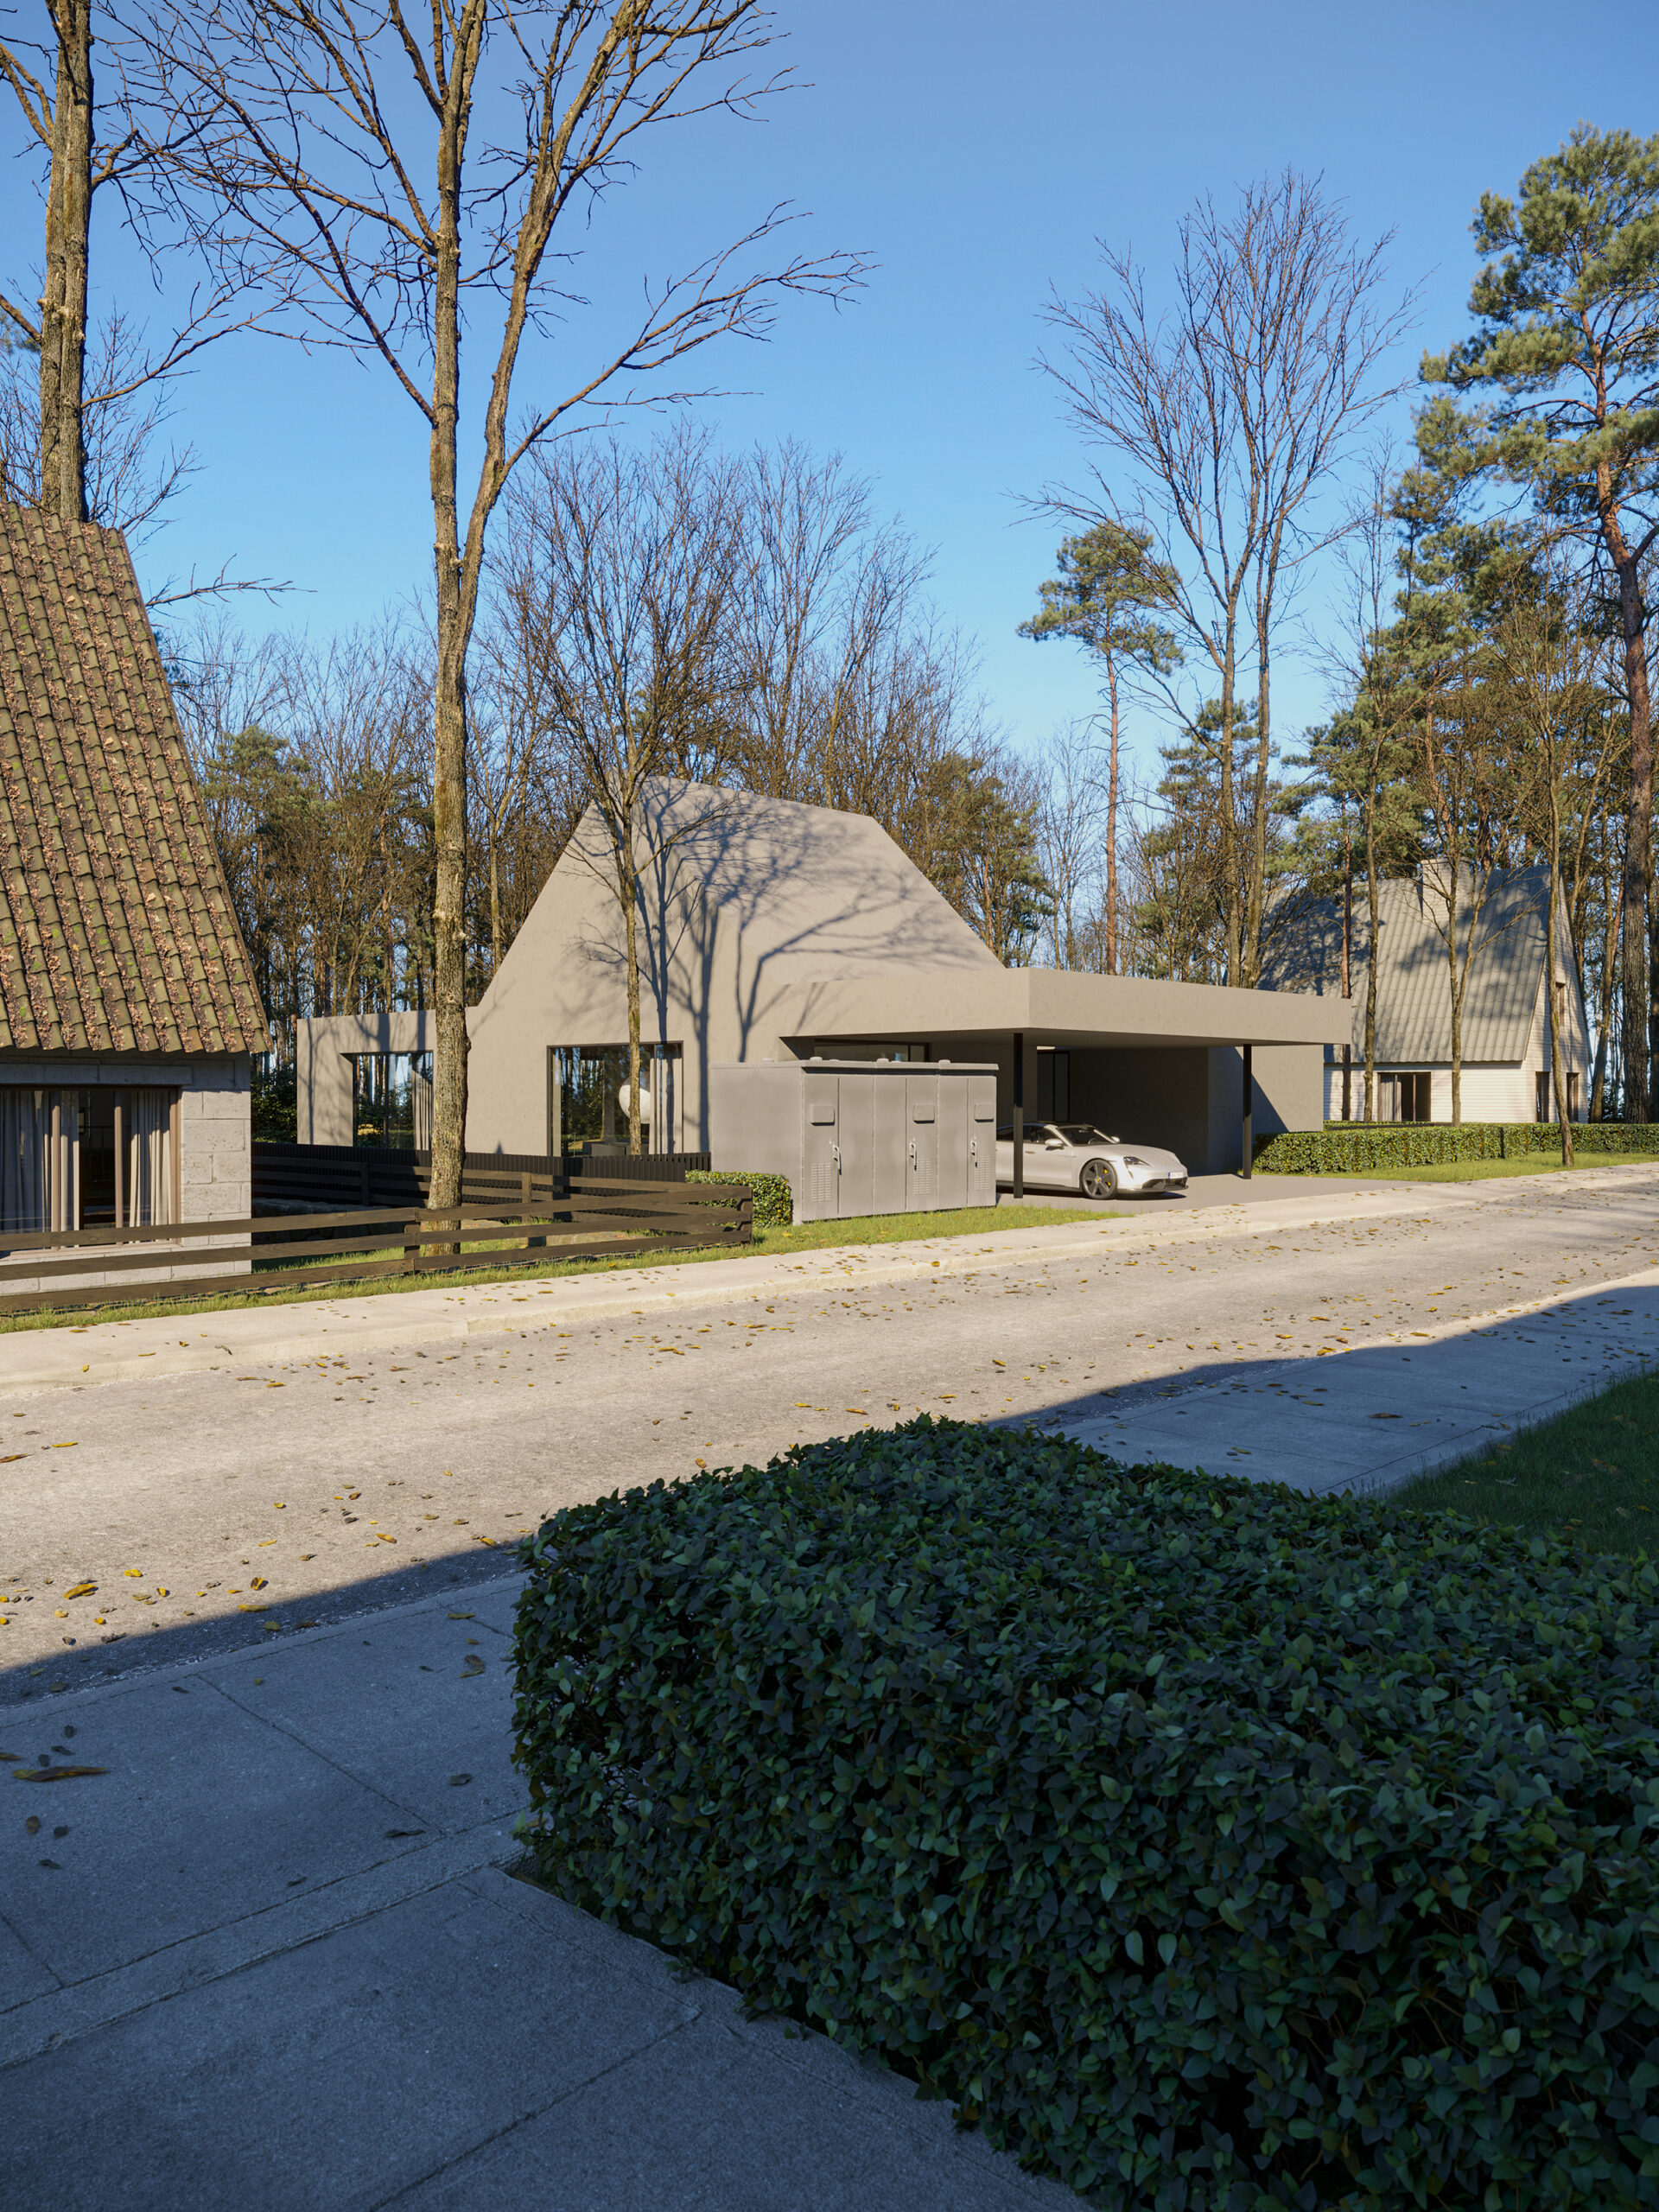 a_110_tamizo_muoo_tallinn_estonia_house_minimal_project_01